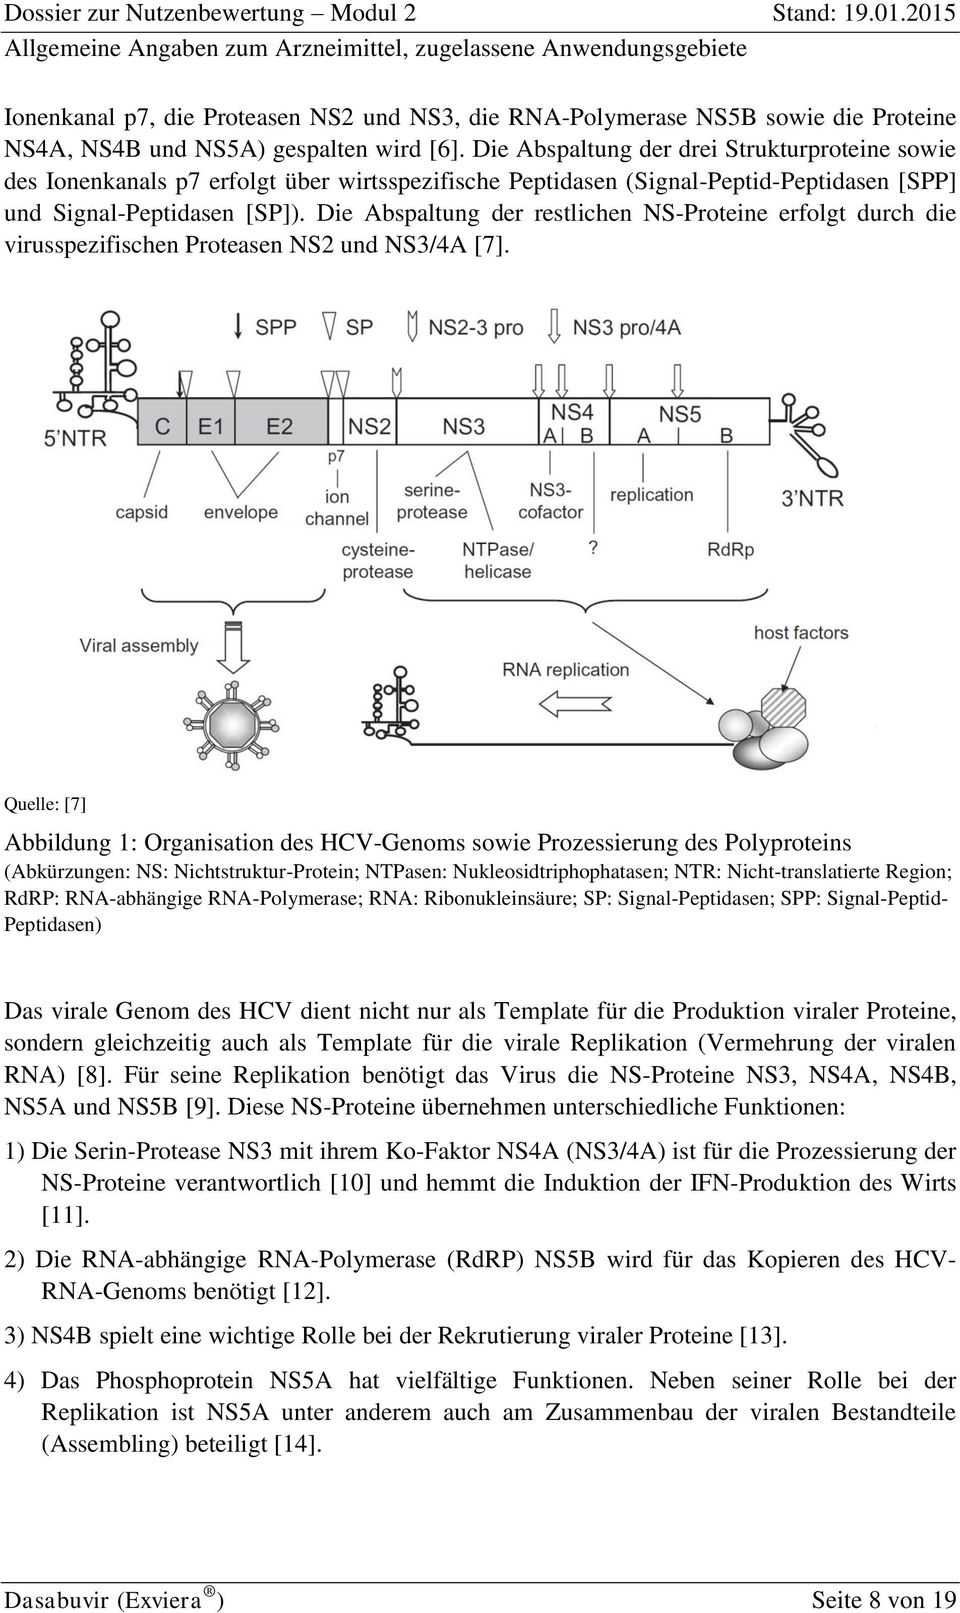 Die Abspaltung der restlichen NS-Proteine erfolgt durch die virusspezifischen Proteasen NS2 und NS3/4A [7].